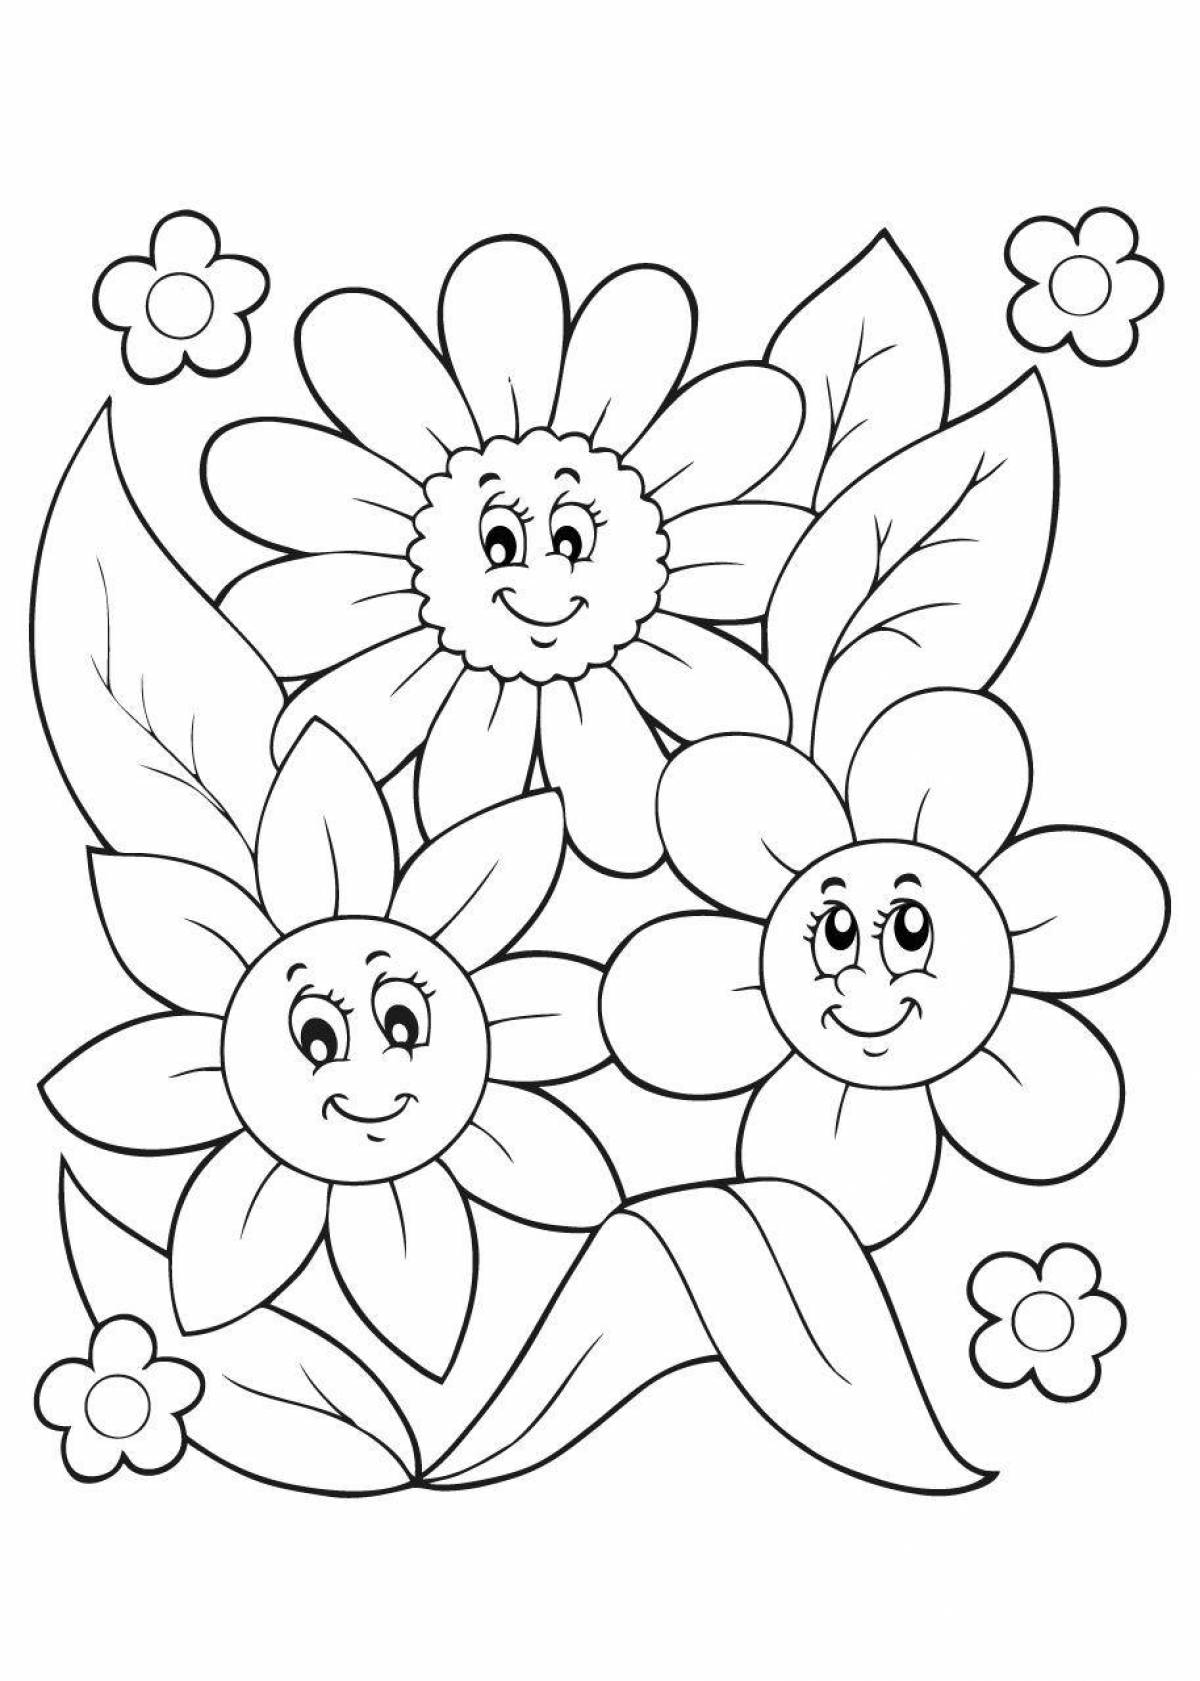 Лучистая раскраска цветок для детей 5-6 лет